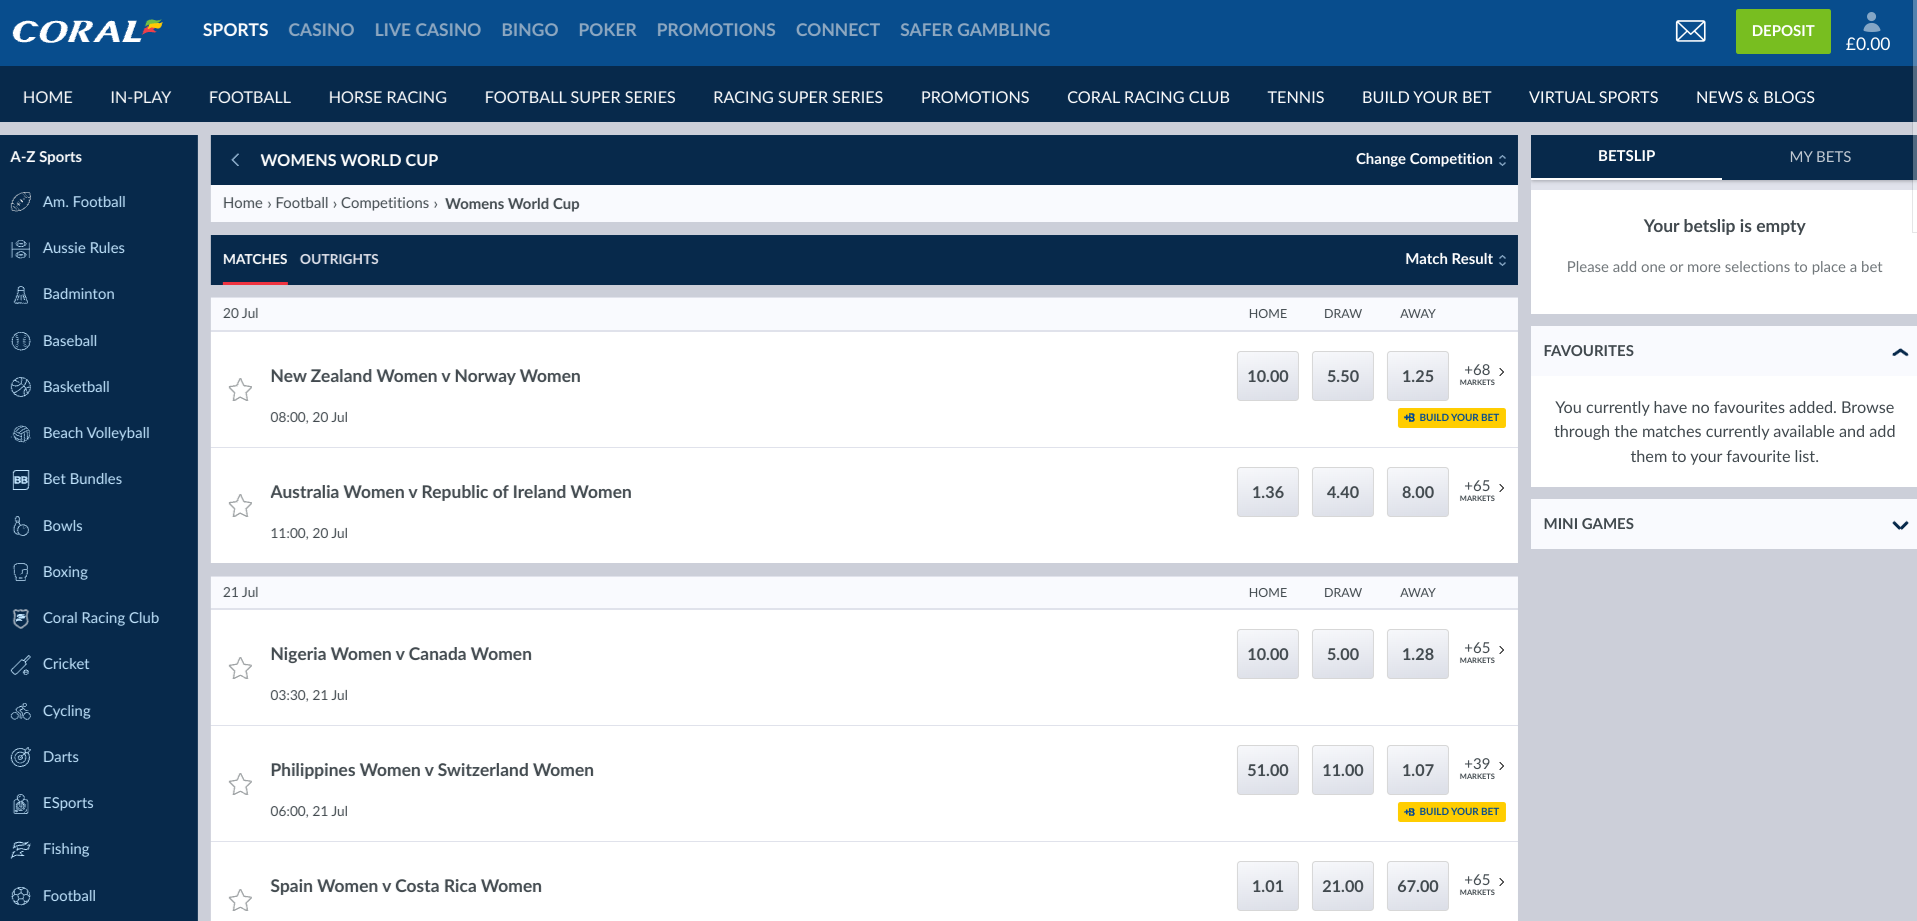 New user bonus of £20 for betting £5 on any sport